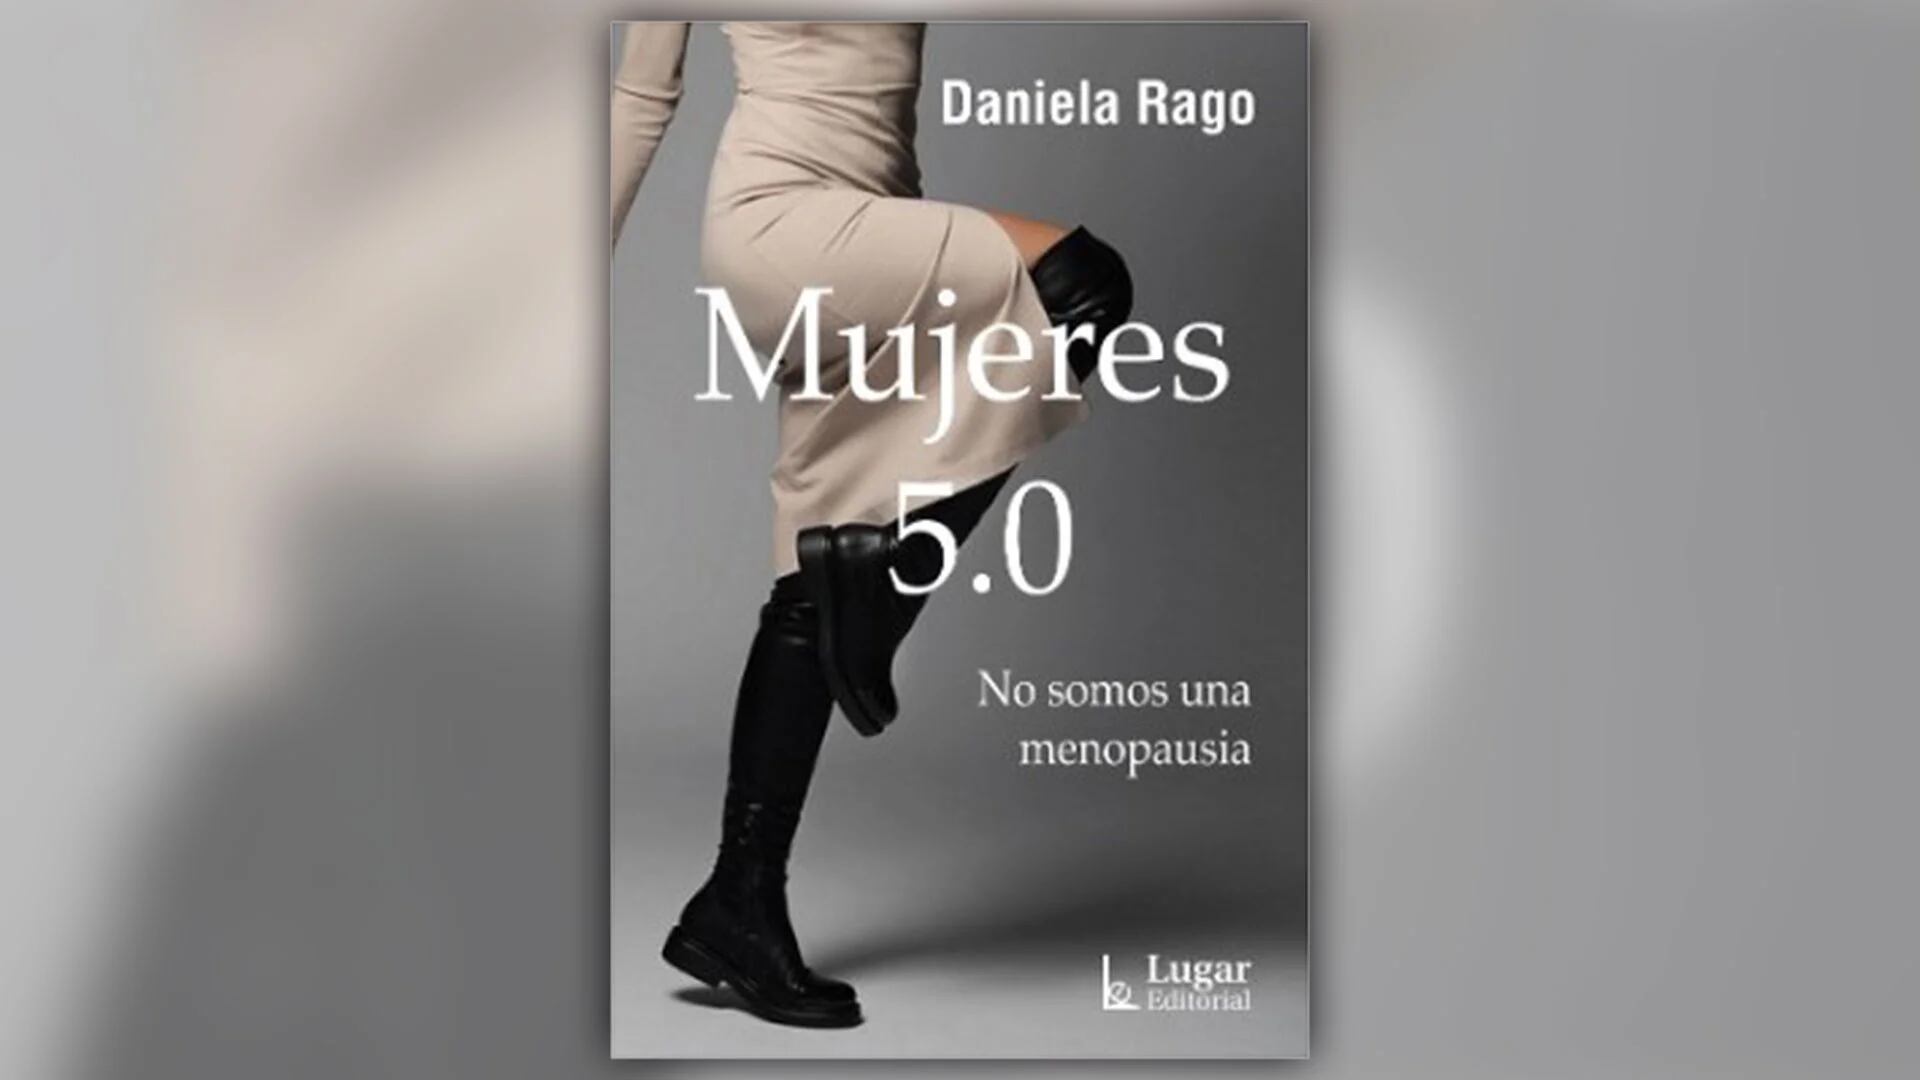 "No somos una menopausia", dice Rago desde la tapa de su libro.